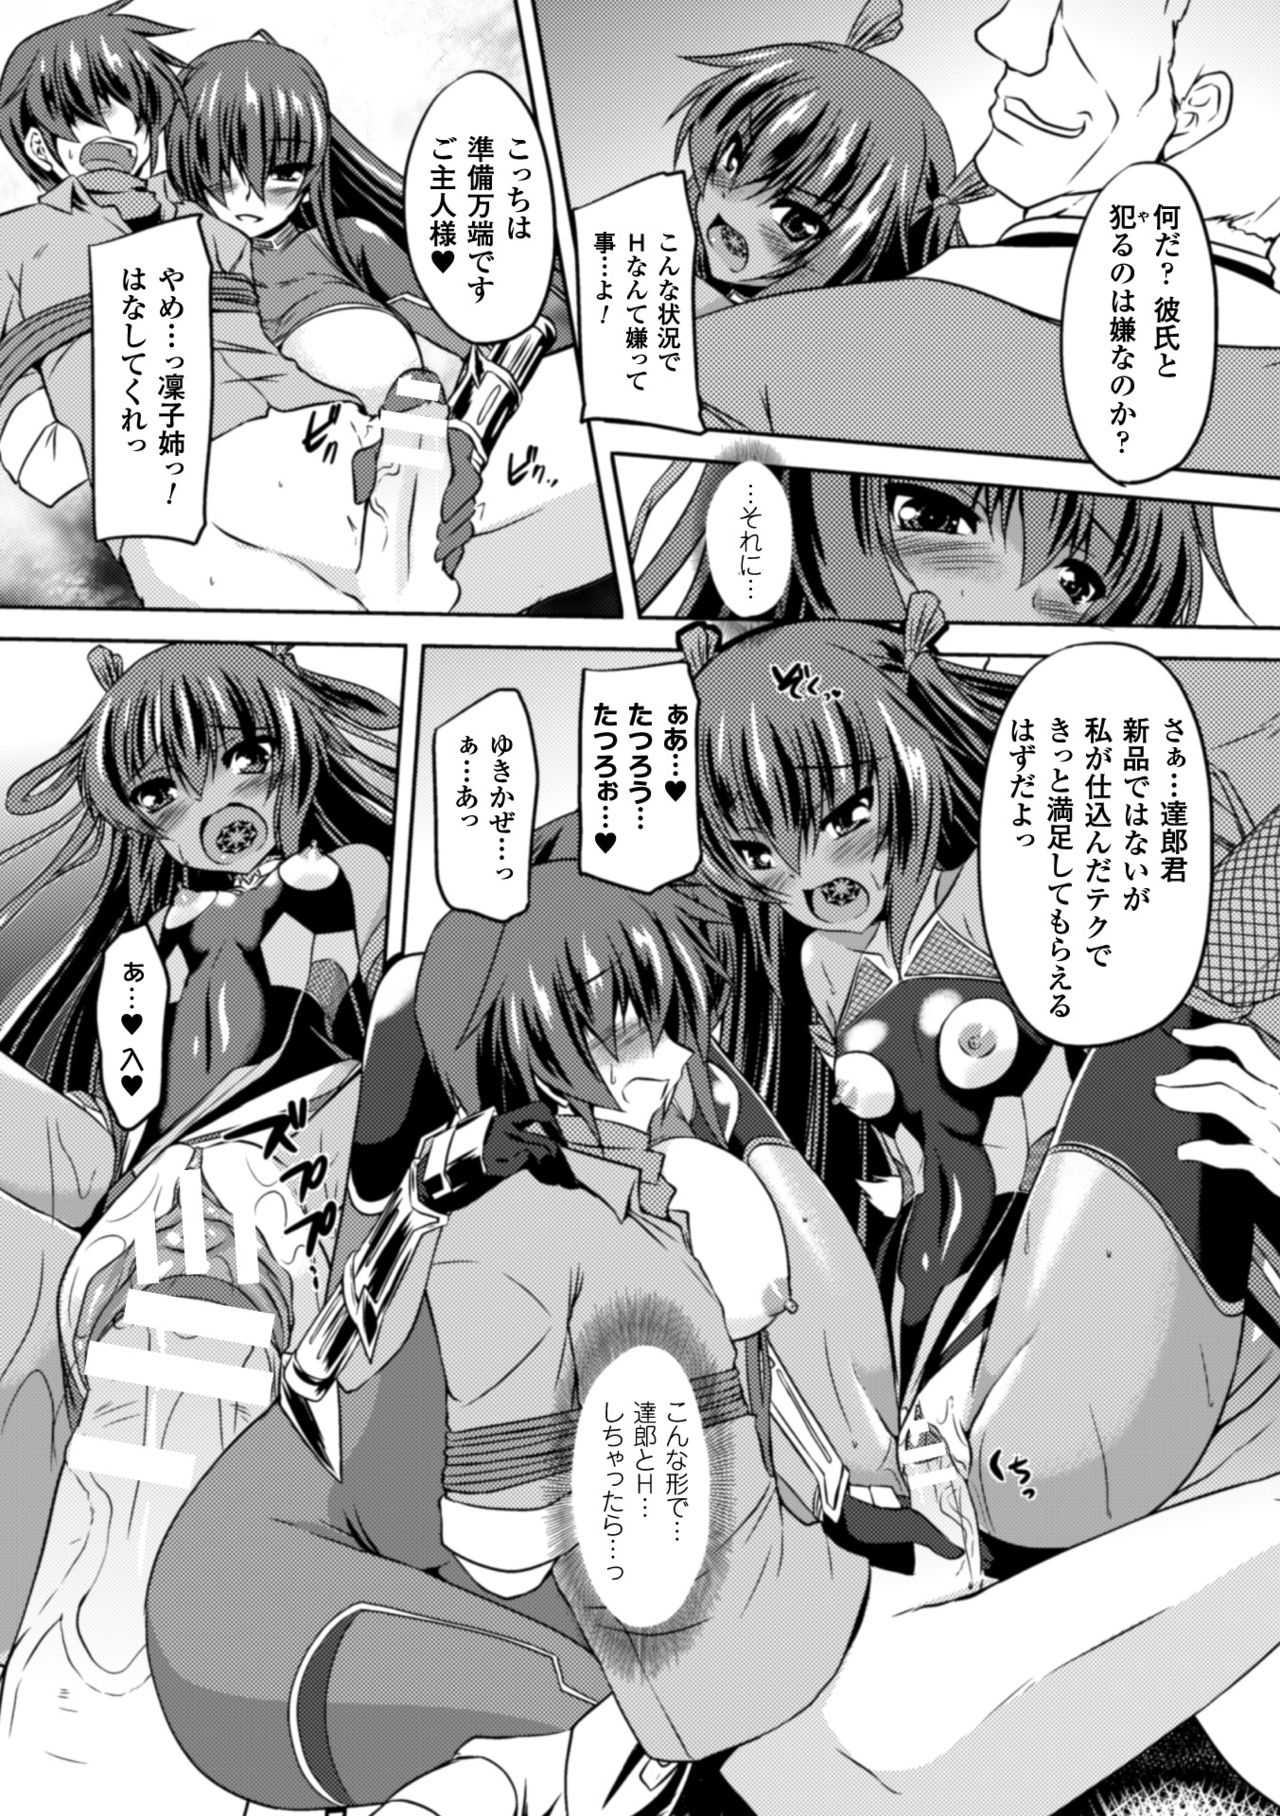 [Anthology] Seigi no Heroine Kangoku File Vol. 2 [Digital] page 9 full